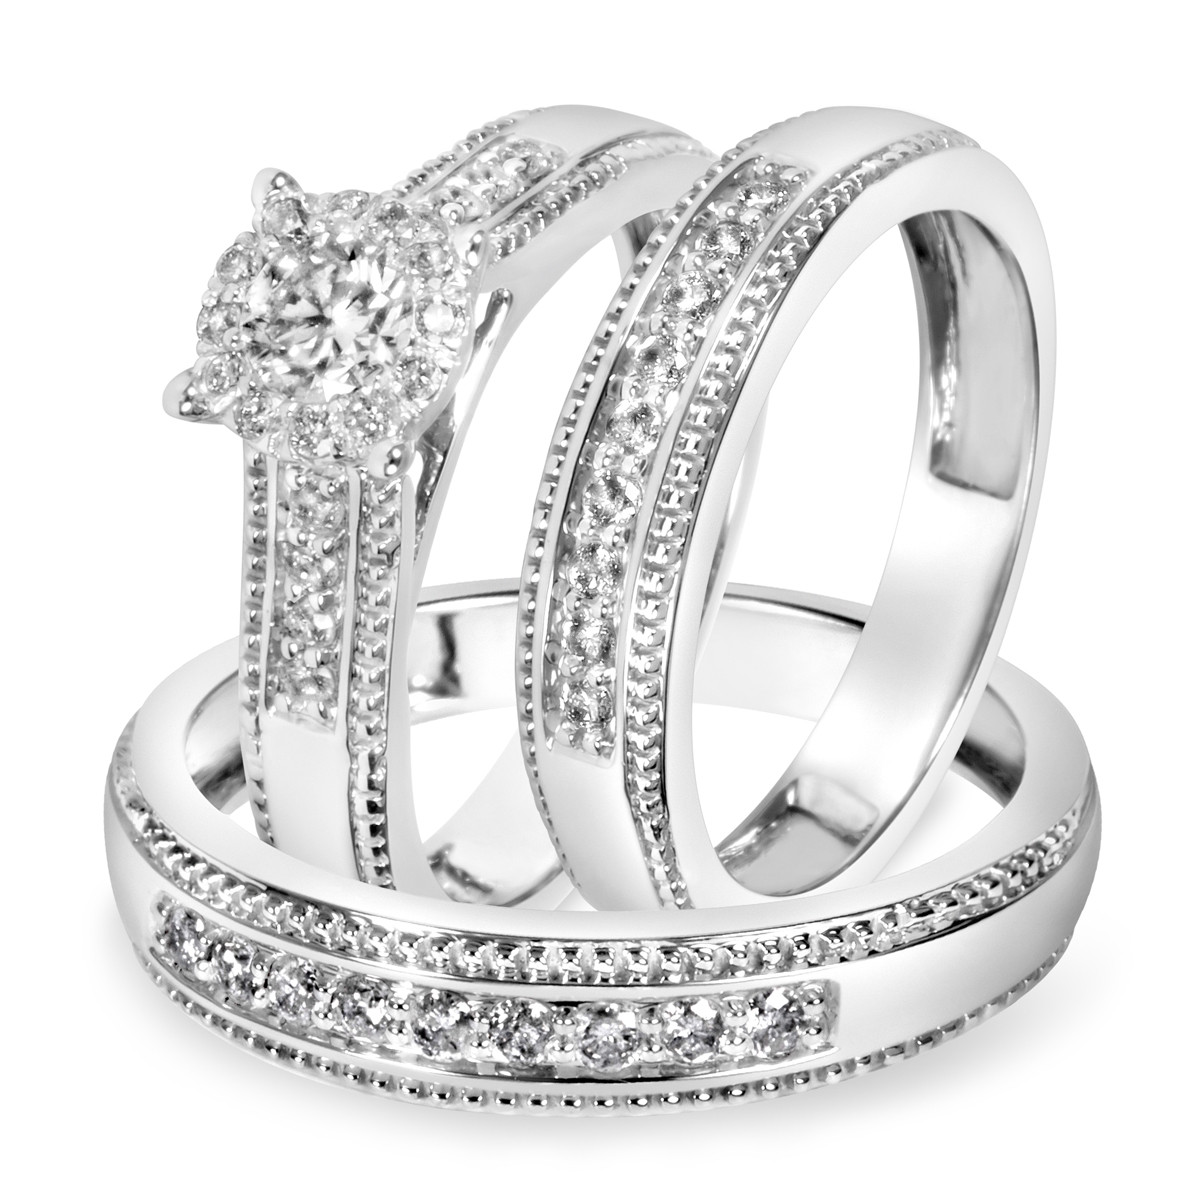 Wedding Band Sets White Gold
 7 8 Carat T W Diamond Trio Matching Wedding Ring Set 14K